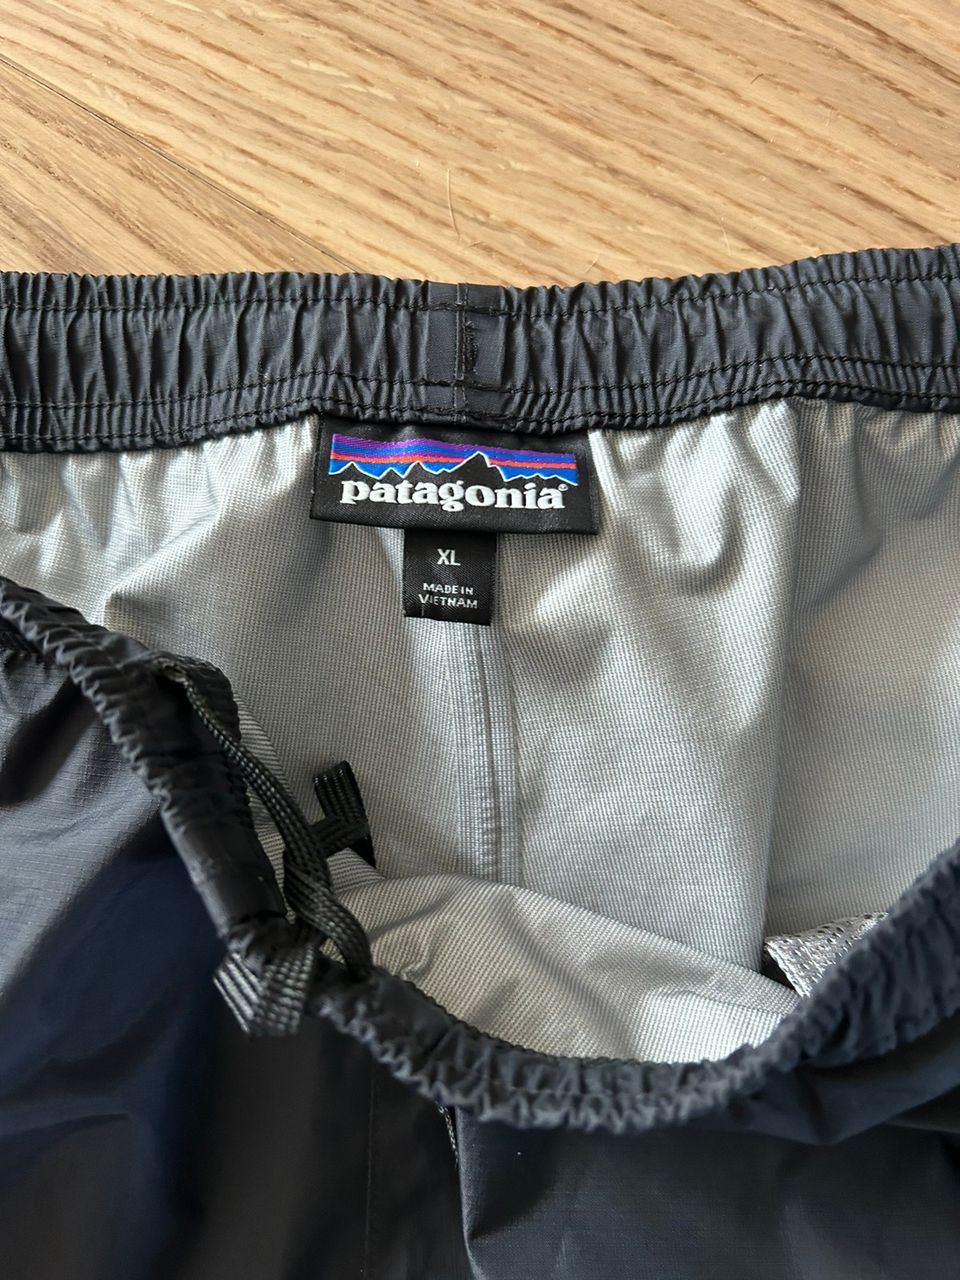 Patagonia Men's Torrentshell 3L Pants × 1 Black / XL / Regular